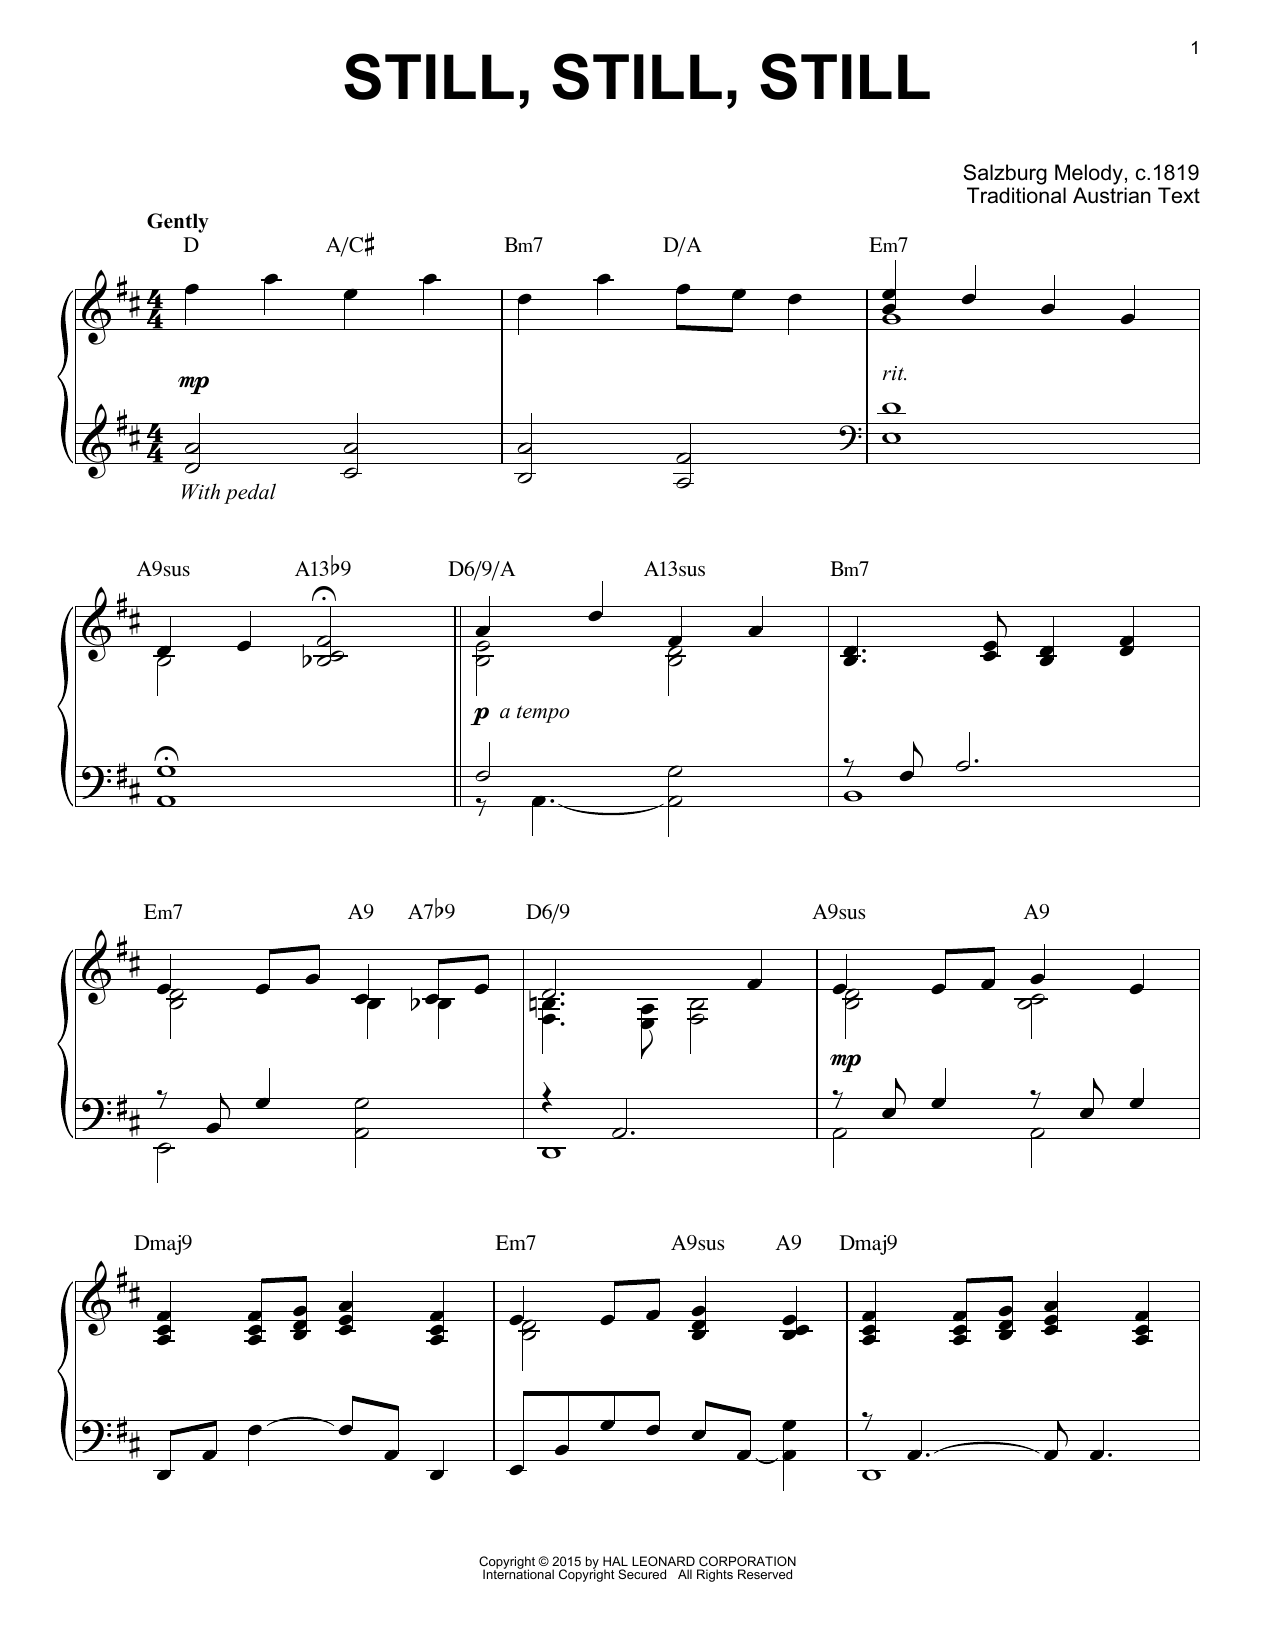 Salzburg Melody c.1819 Still, Still, Still [Jazz version] (arr. Brent Edstrom) Sheet Music Notes & Chords for Piano - Download or Print PDF